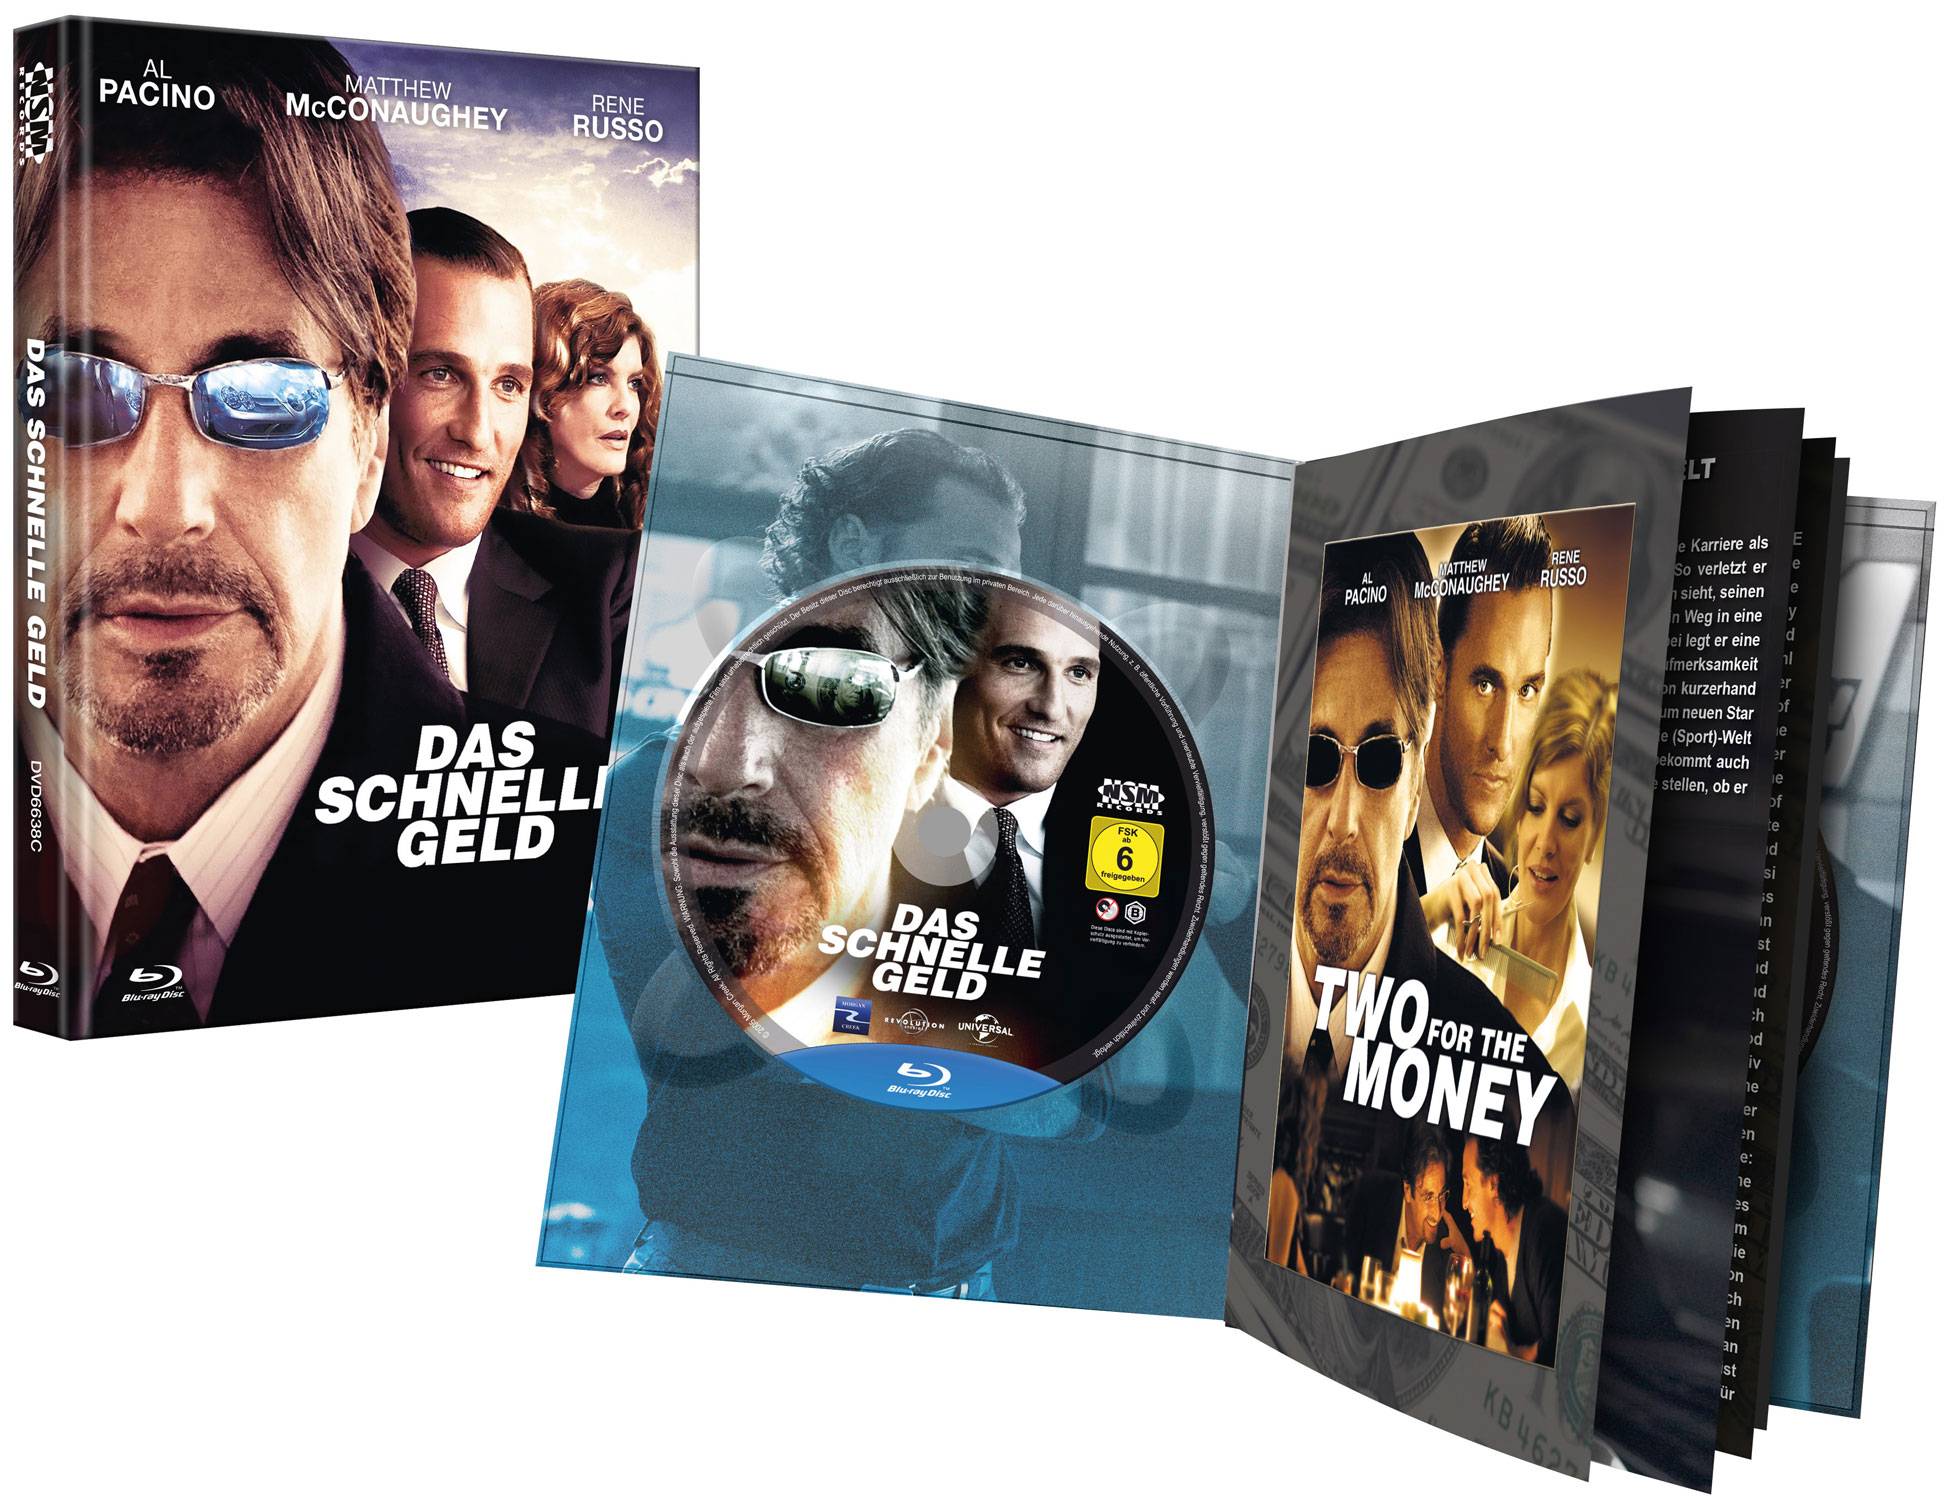 Das schnelle Geld (Mediabook) (DVD + Blu-ray) - Cover C